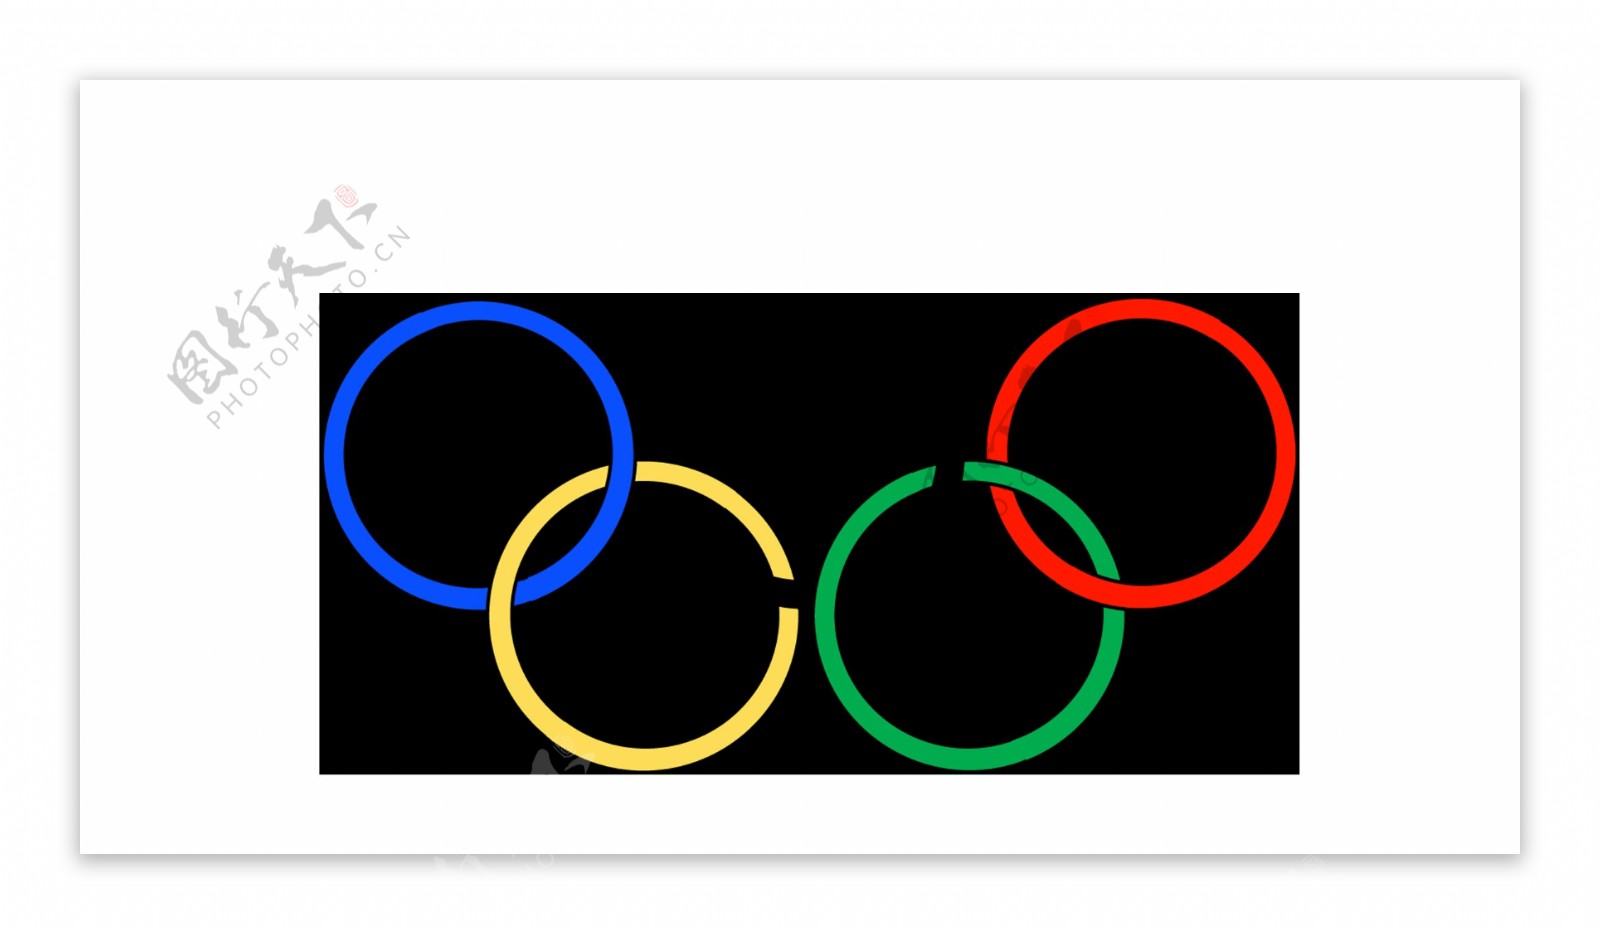 简约奥运五环元素